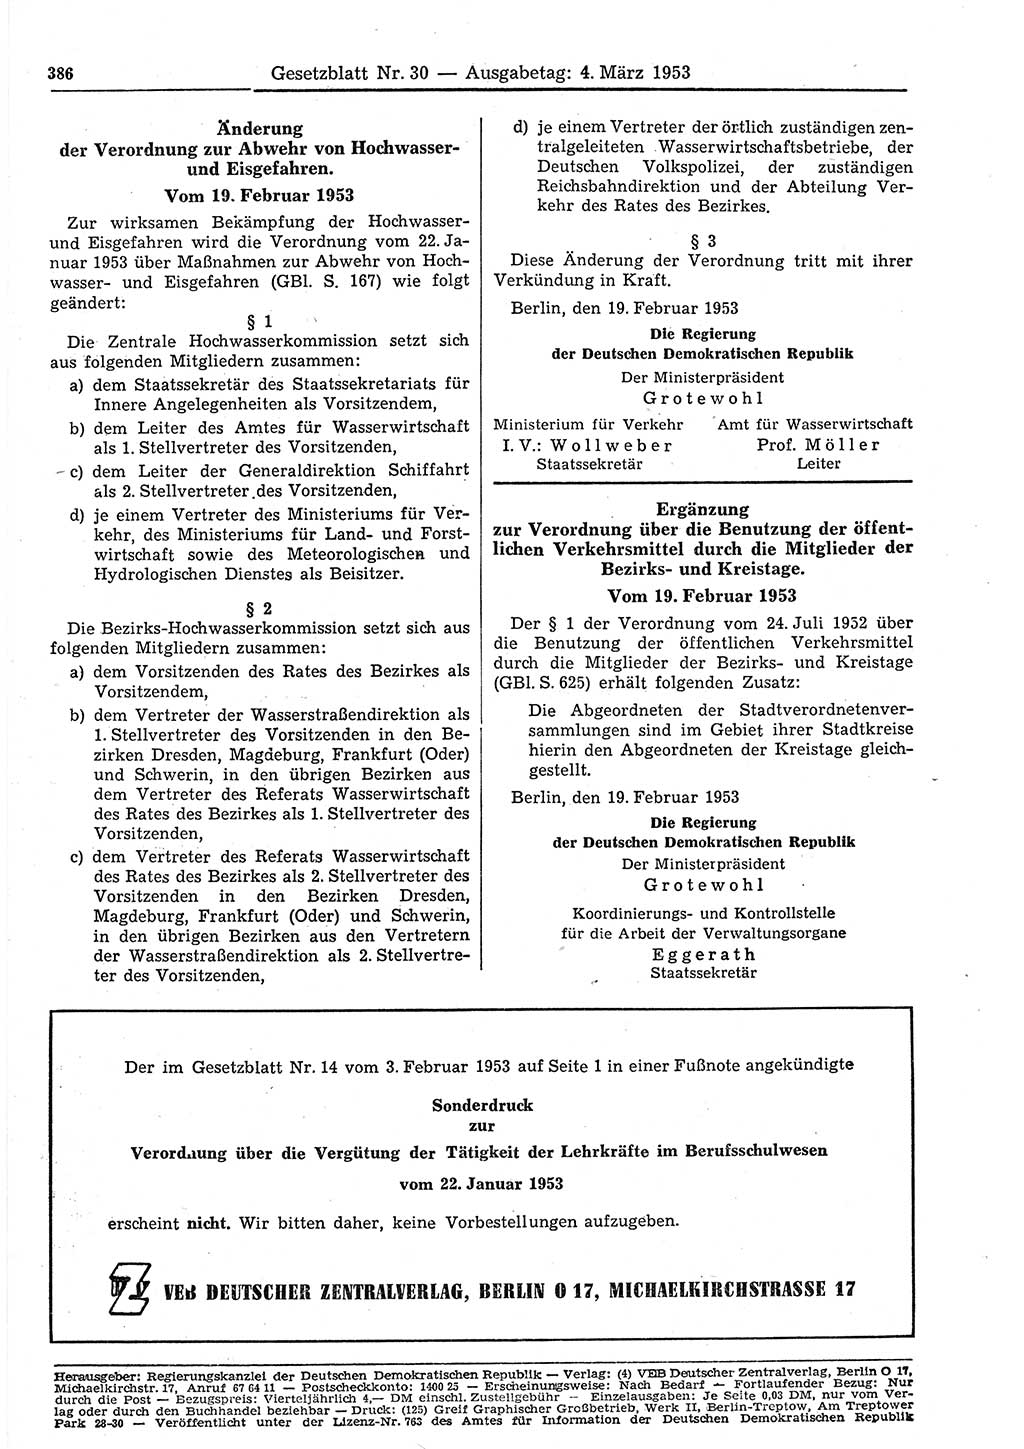 Gesetzblatt (GBl.) der Deutschen Demokratischen Republik (DDR) 1953, Seite 386 (GBl. DDR 1953, S. 386)